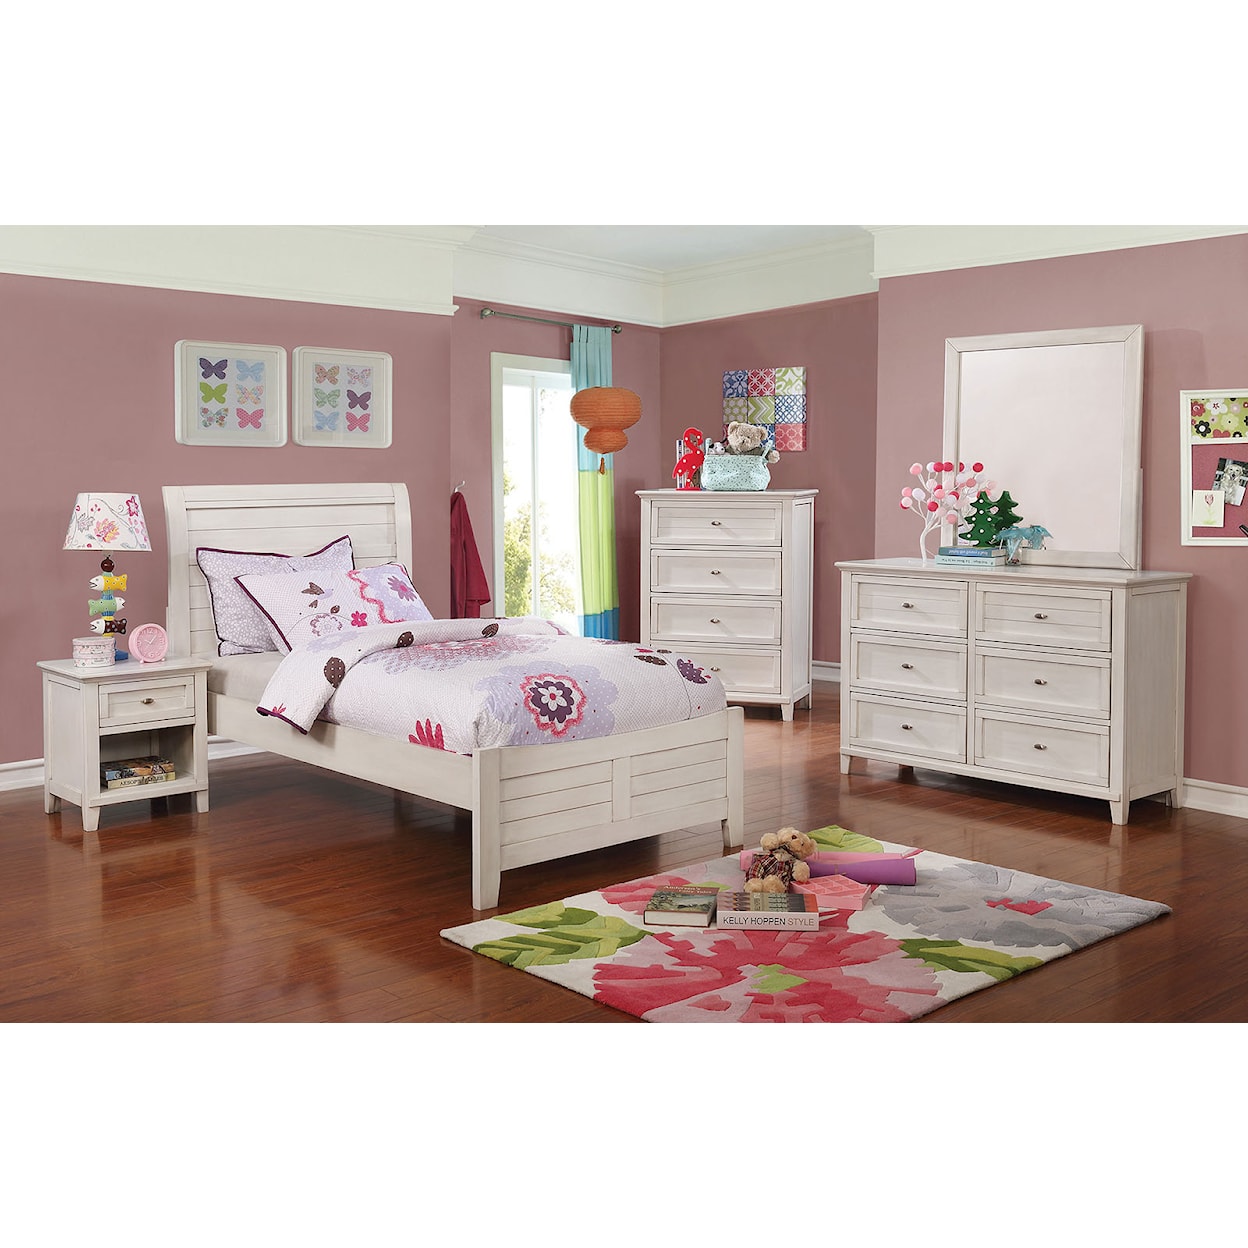 Furniture of America Brogan 4 Pc. Full Bedroom Set